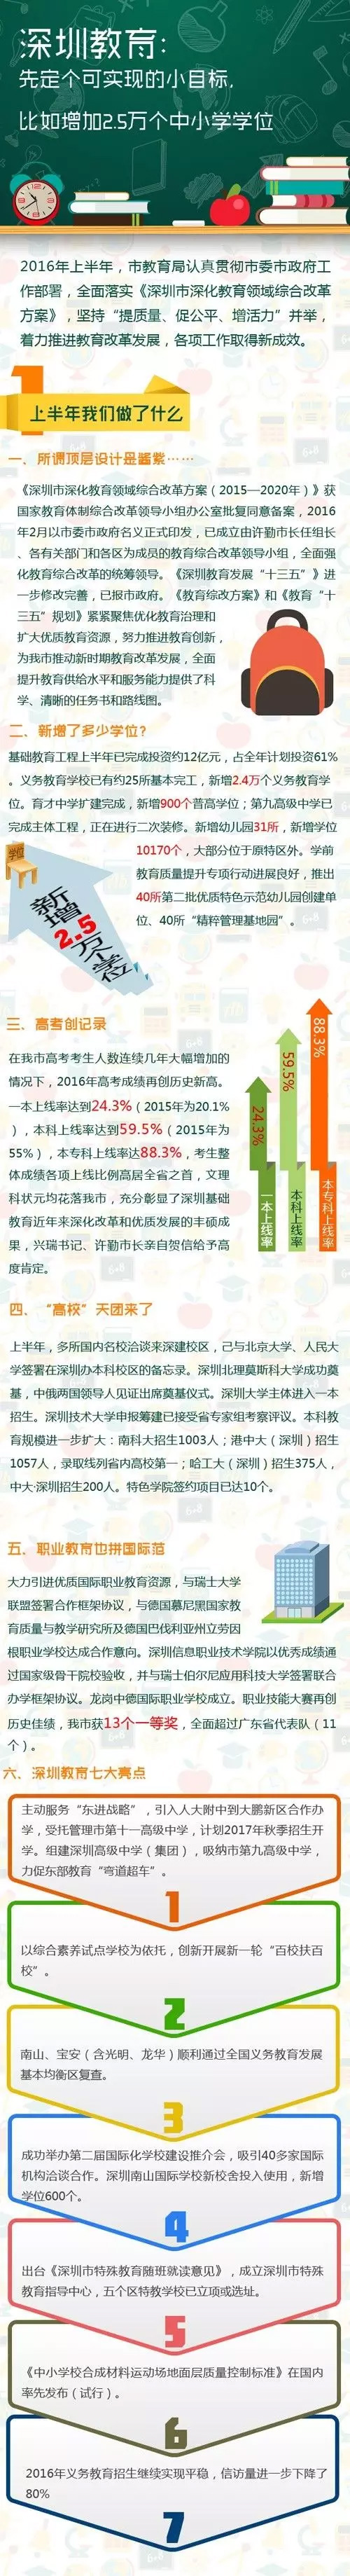 2016年上半年深圳中小学教育成果总结1